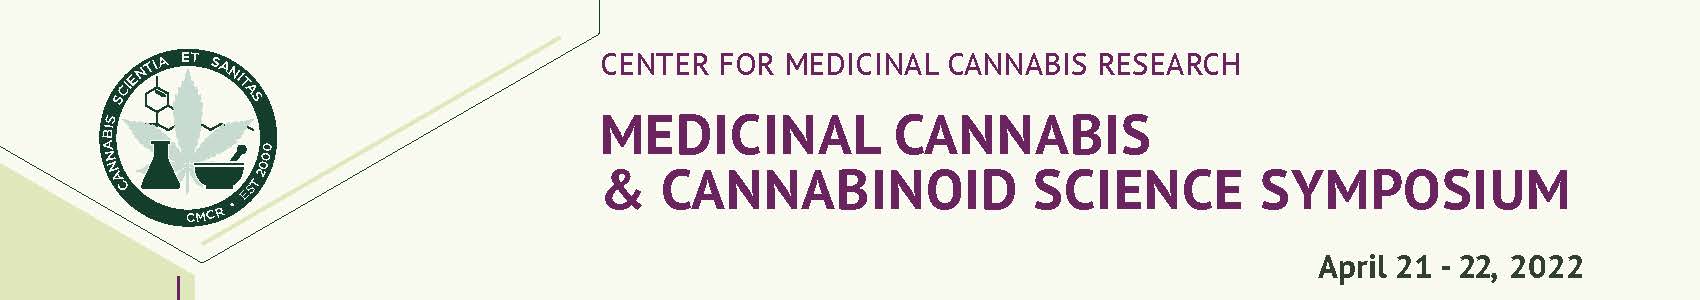 Medicinal Cannabis and Cannabinoid-Based Medicine: Progress, Policy, and Partnership Banner